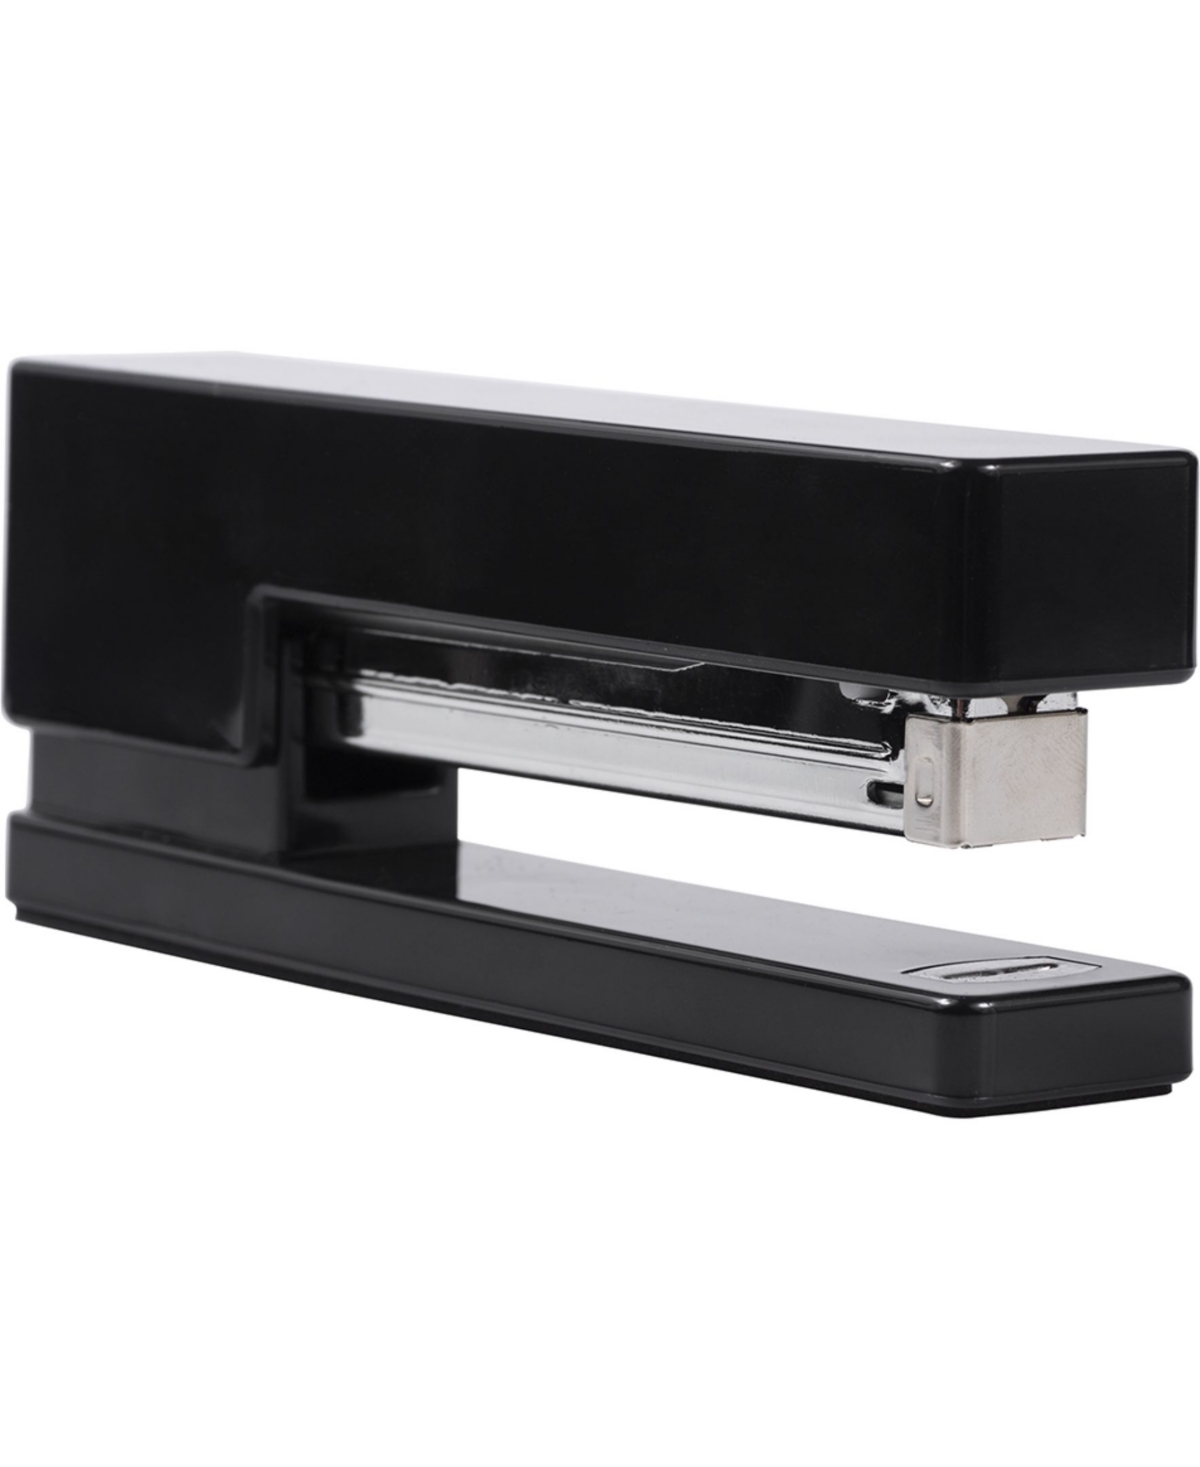 Jam Paper Modern Desk Stapler In Black